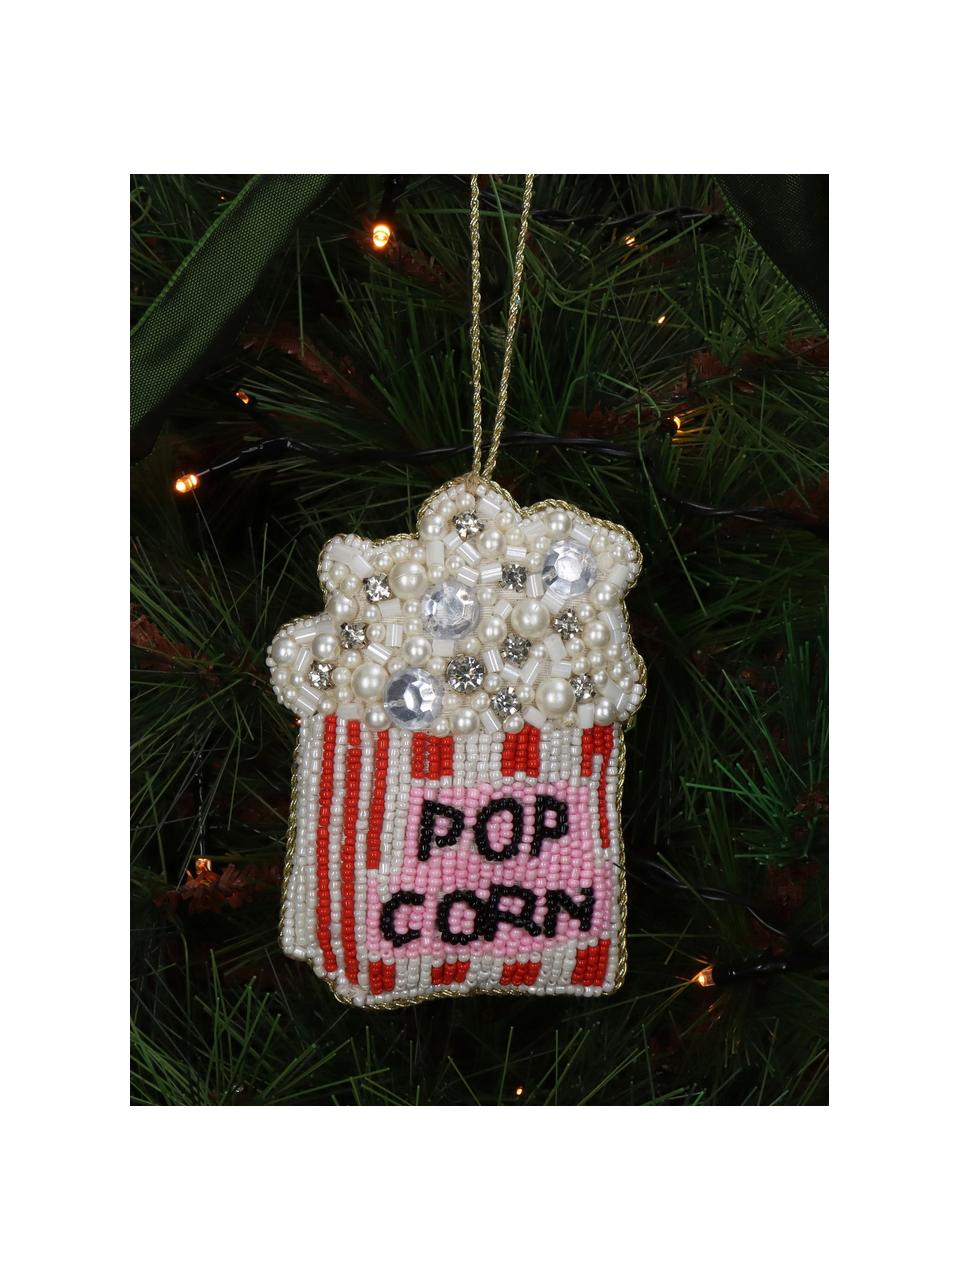 Ozdoba na vánoční stromeček z korálků Popcorn, Sklo, korálky z umělé hmoty, Bílá, červená, růžová, Š 8 cm, V 10 cm